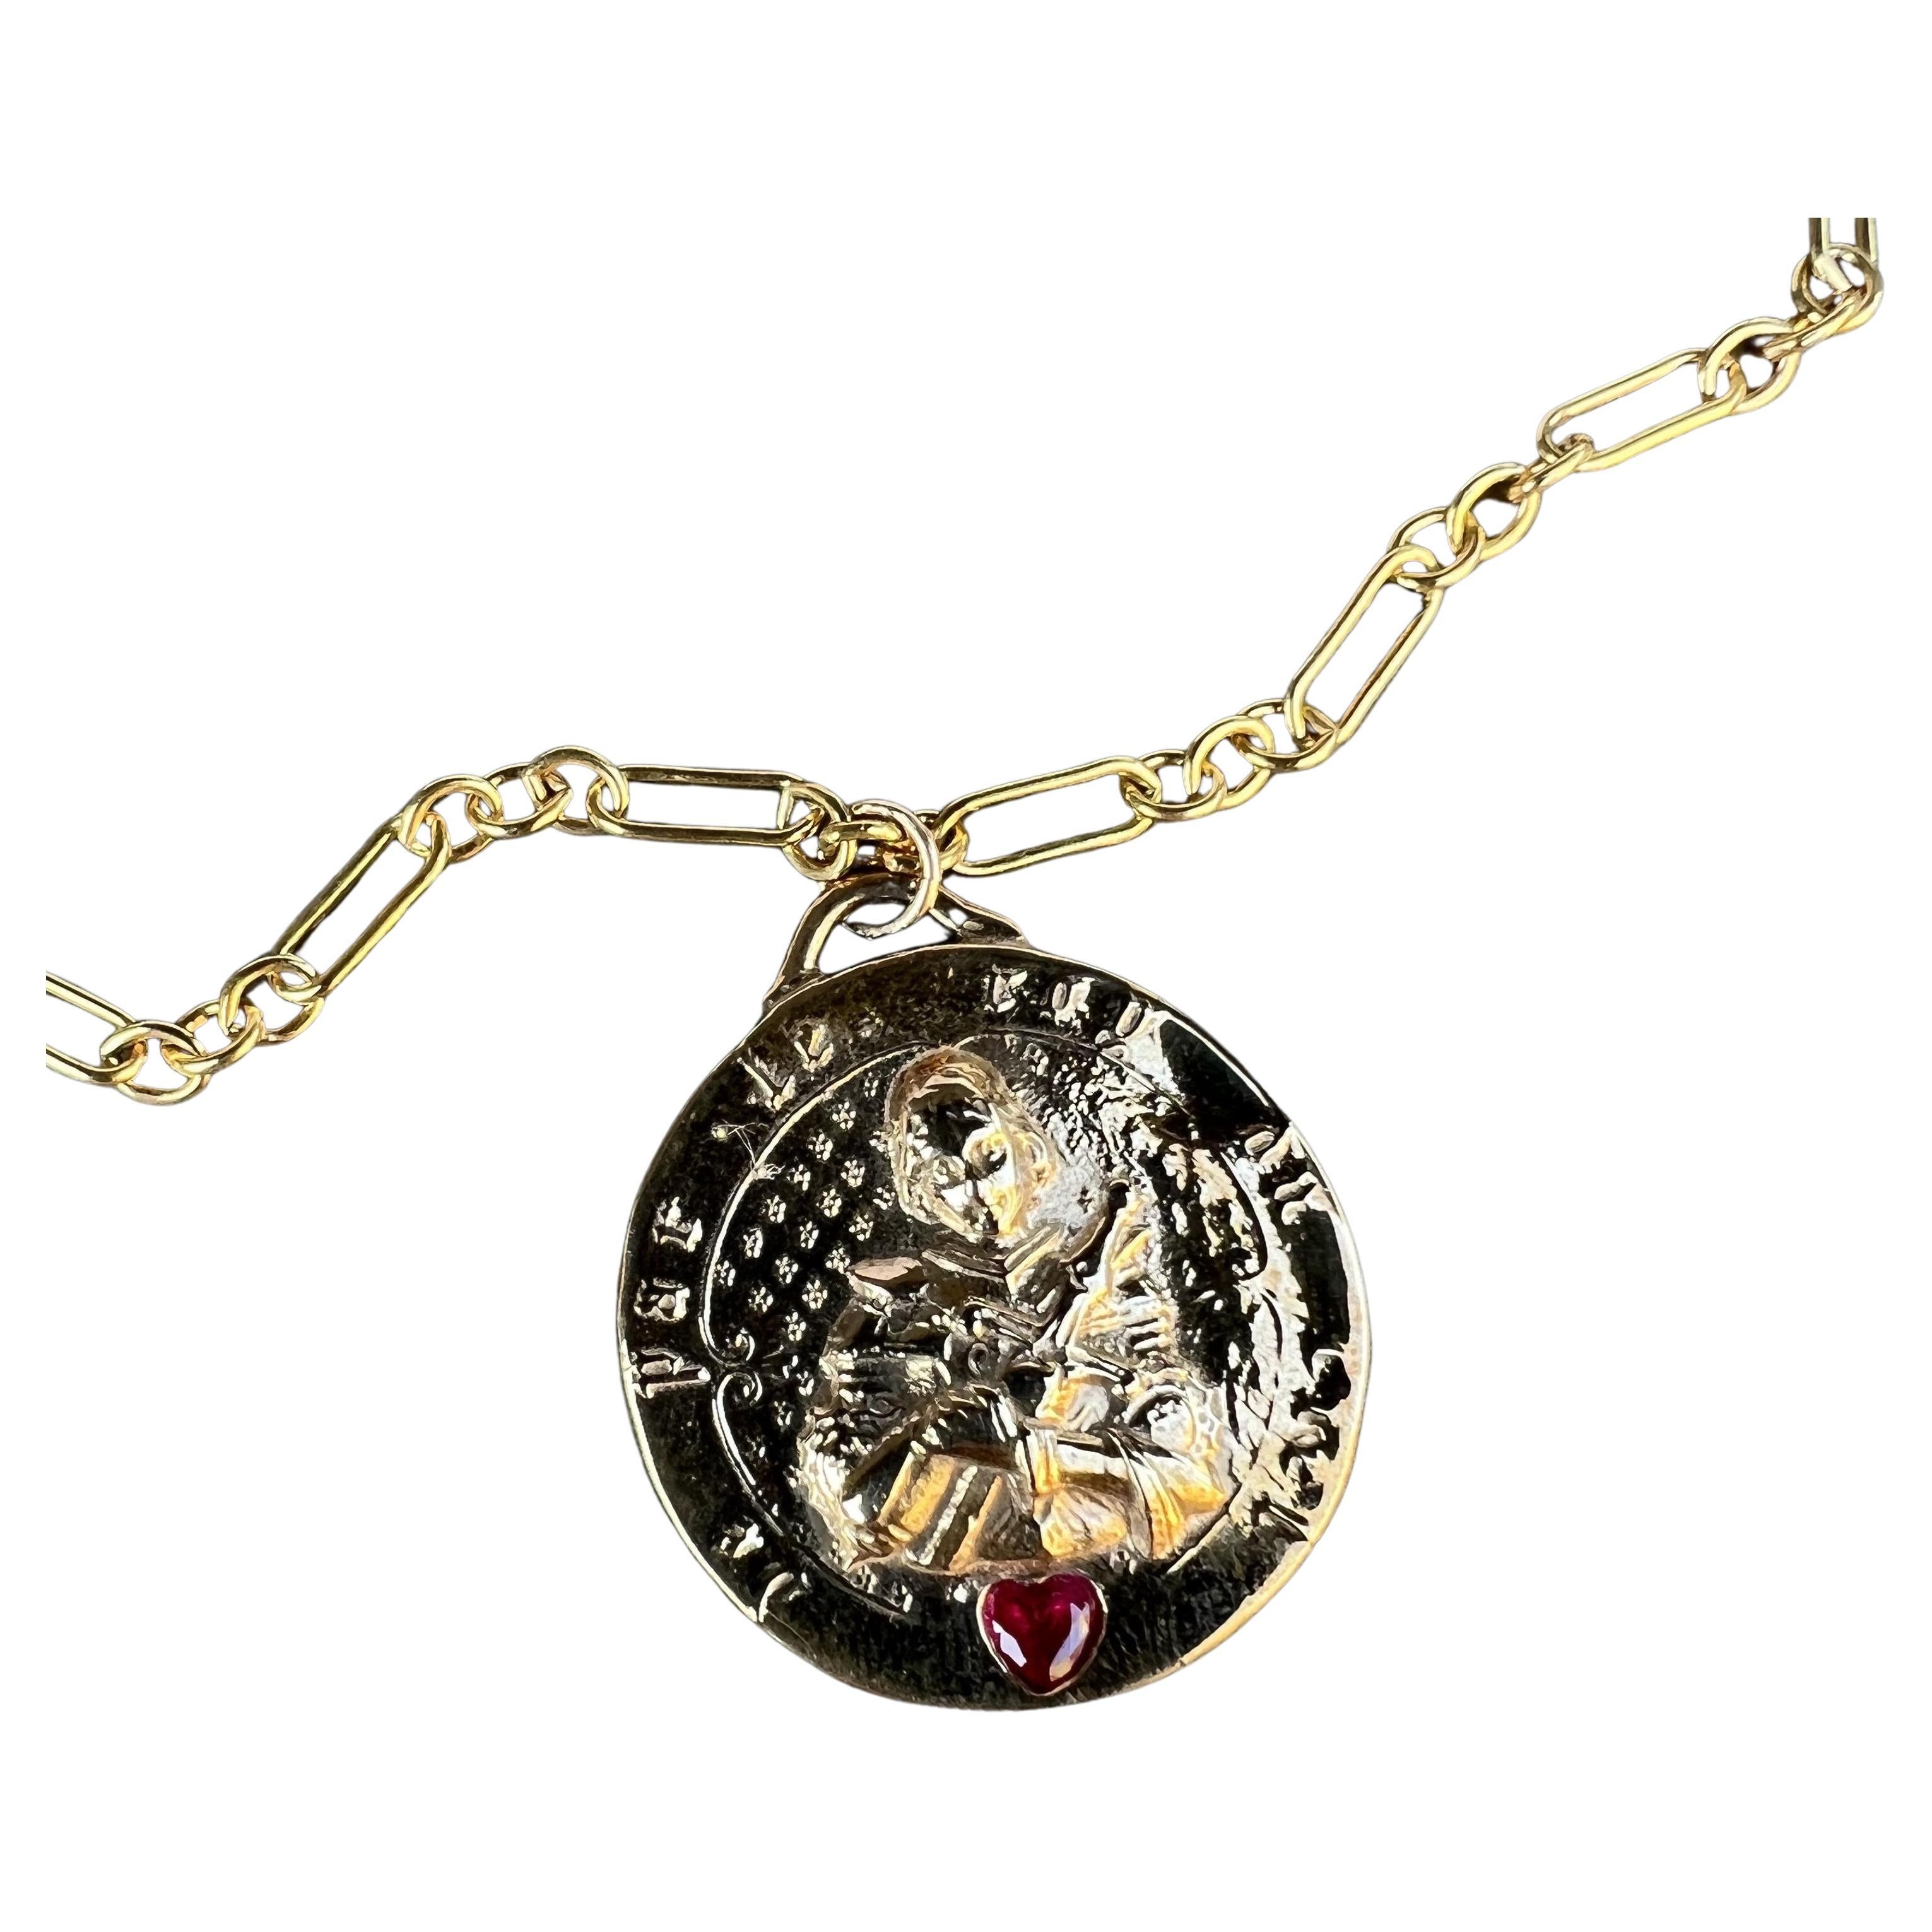 Coeur Médaille Rubis Jeanne d'Arc Pendentif en bronze sur chaîne en or 
Designer : J DAUPHIN
28